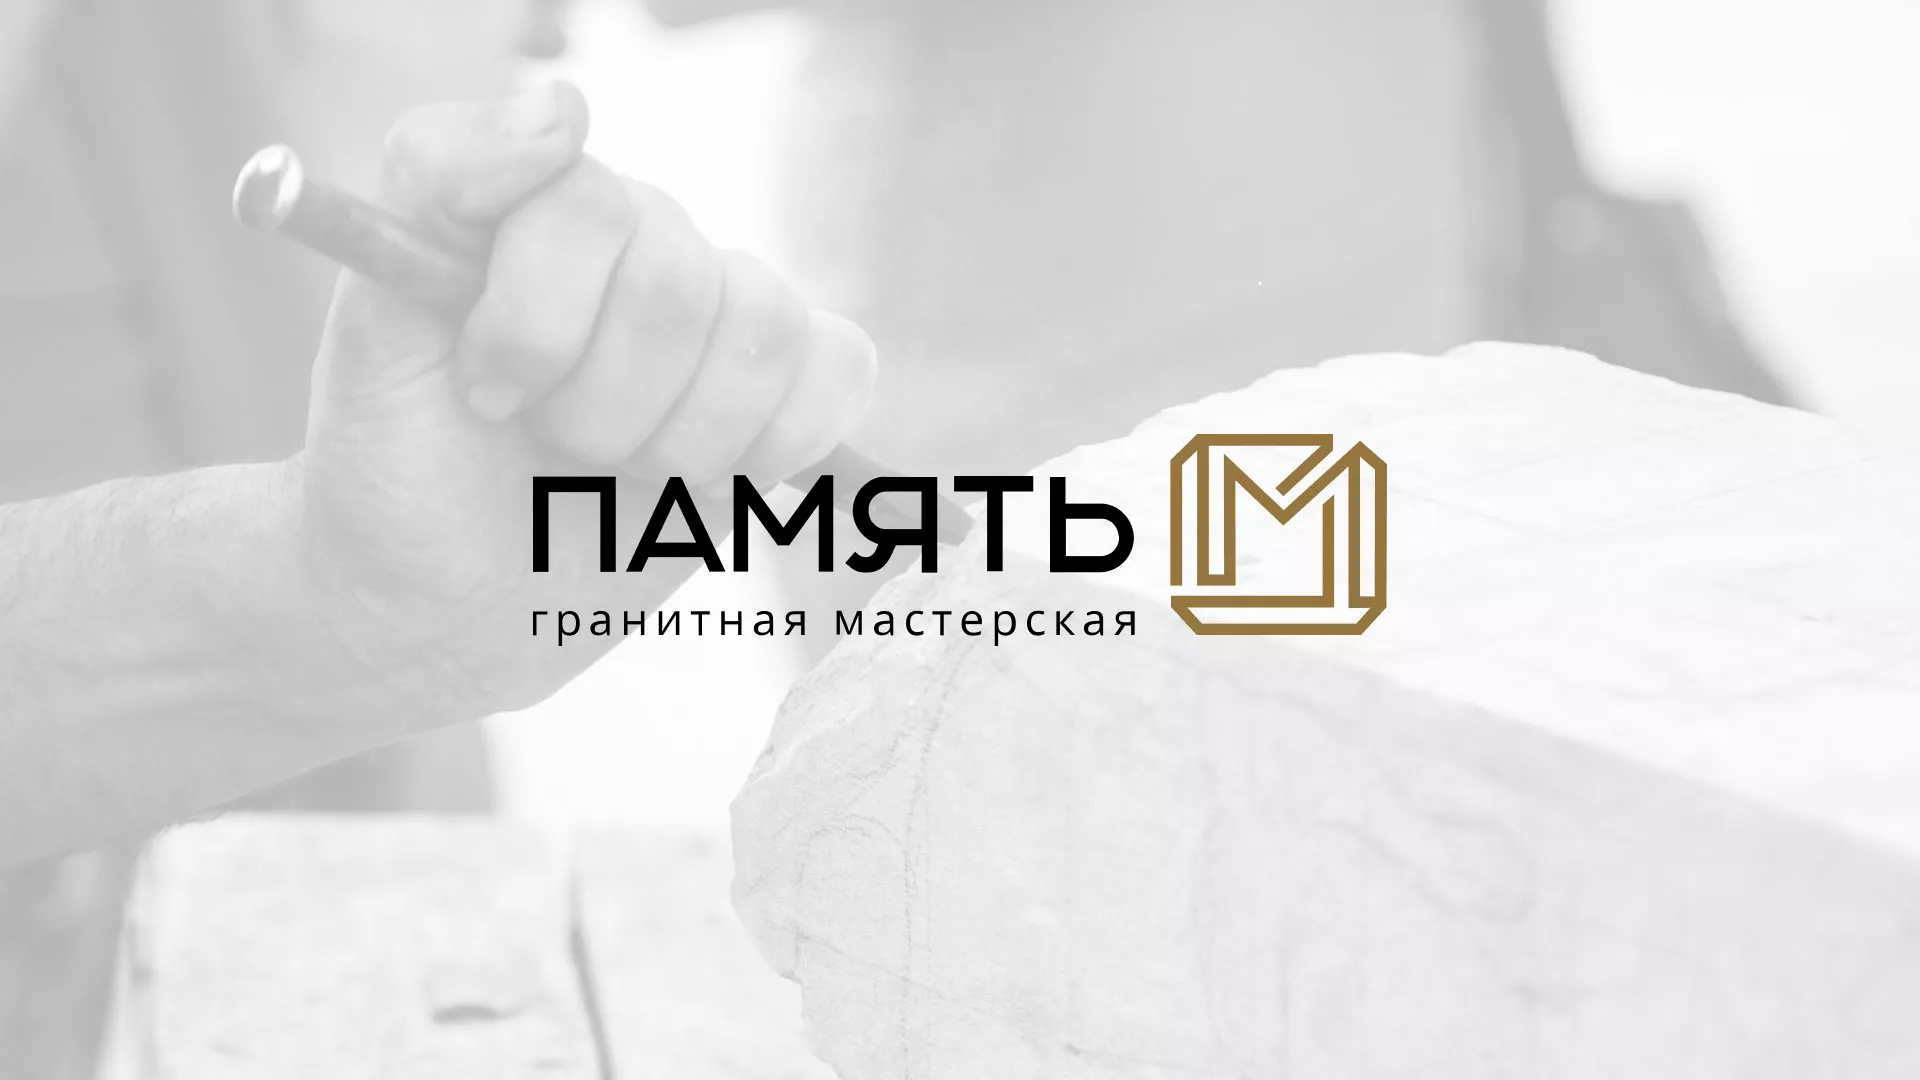 Разработка логотипа и сайта компании «Память-М» в Орехово-Зуево